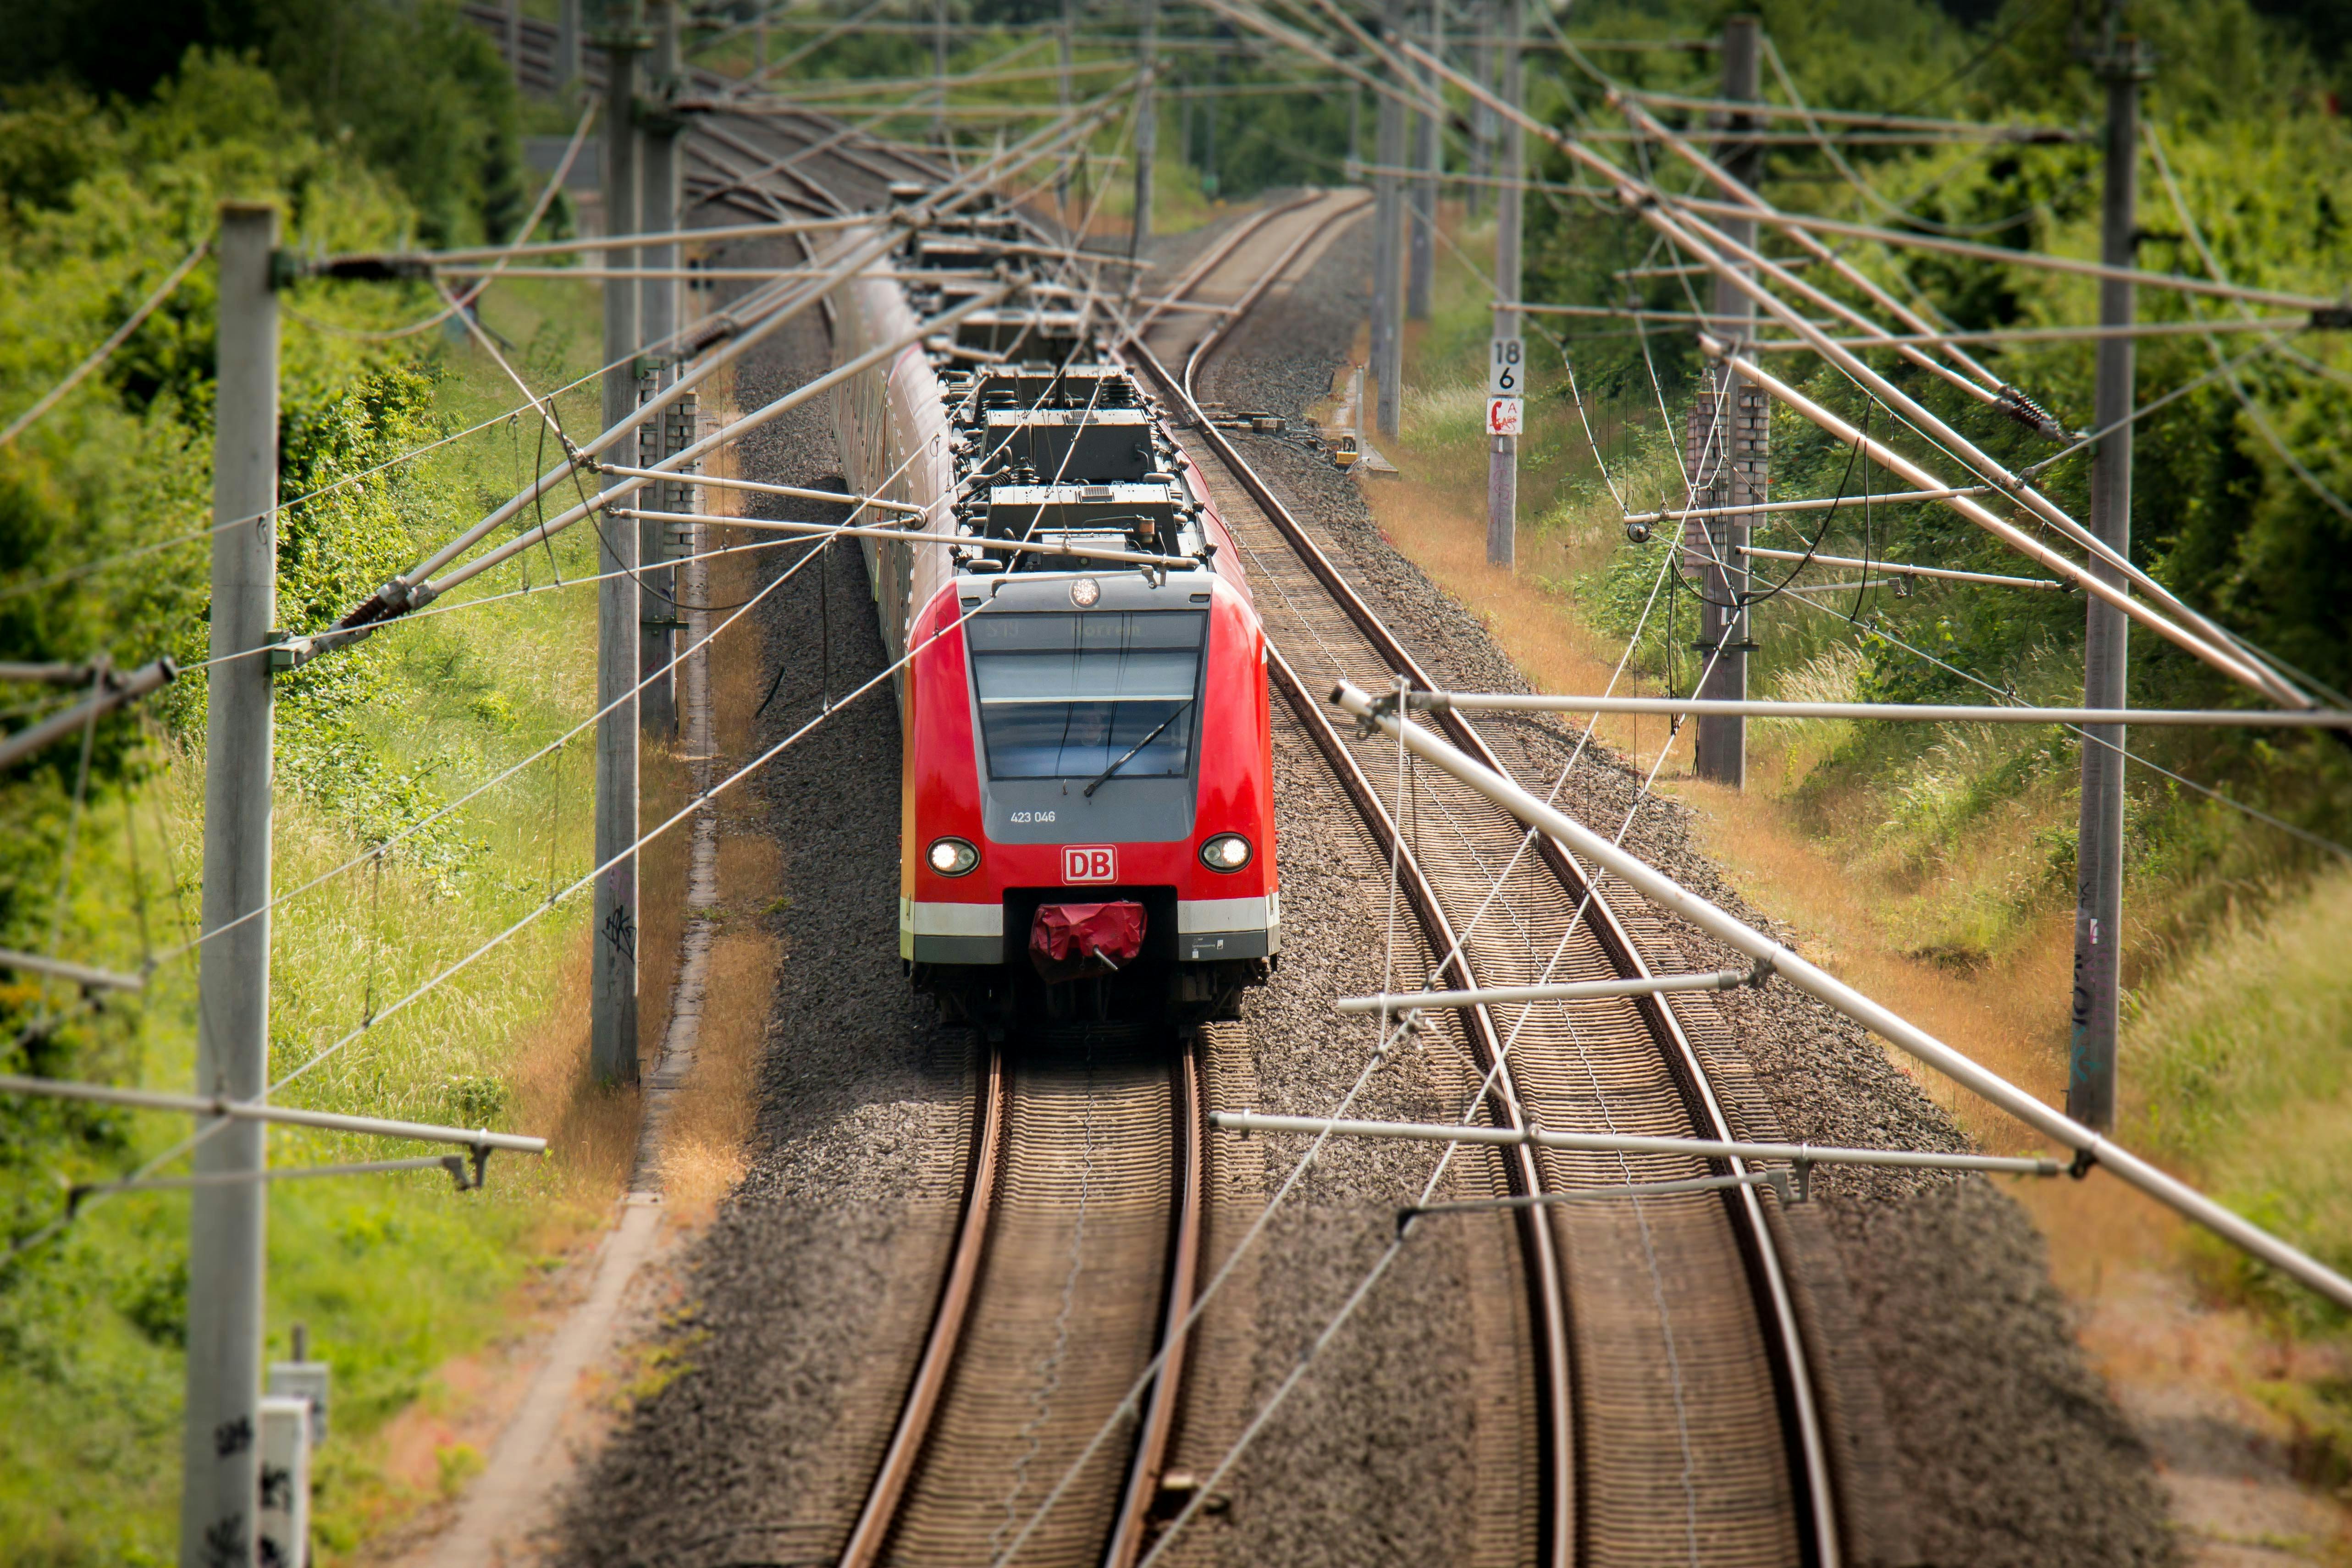 Kostenloses Foto Zum Thema Deutsche Bahn Eisenbahn Eisenbahnlinie